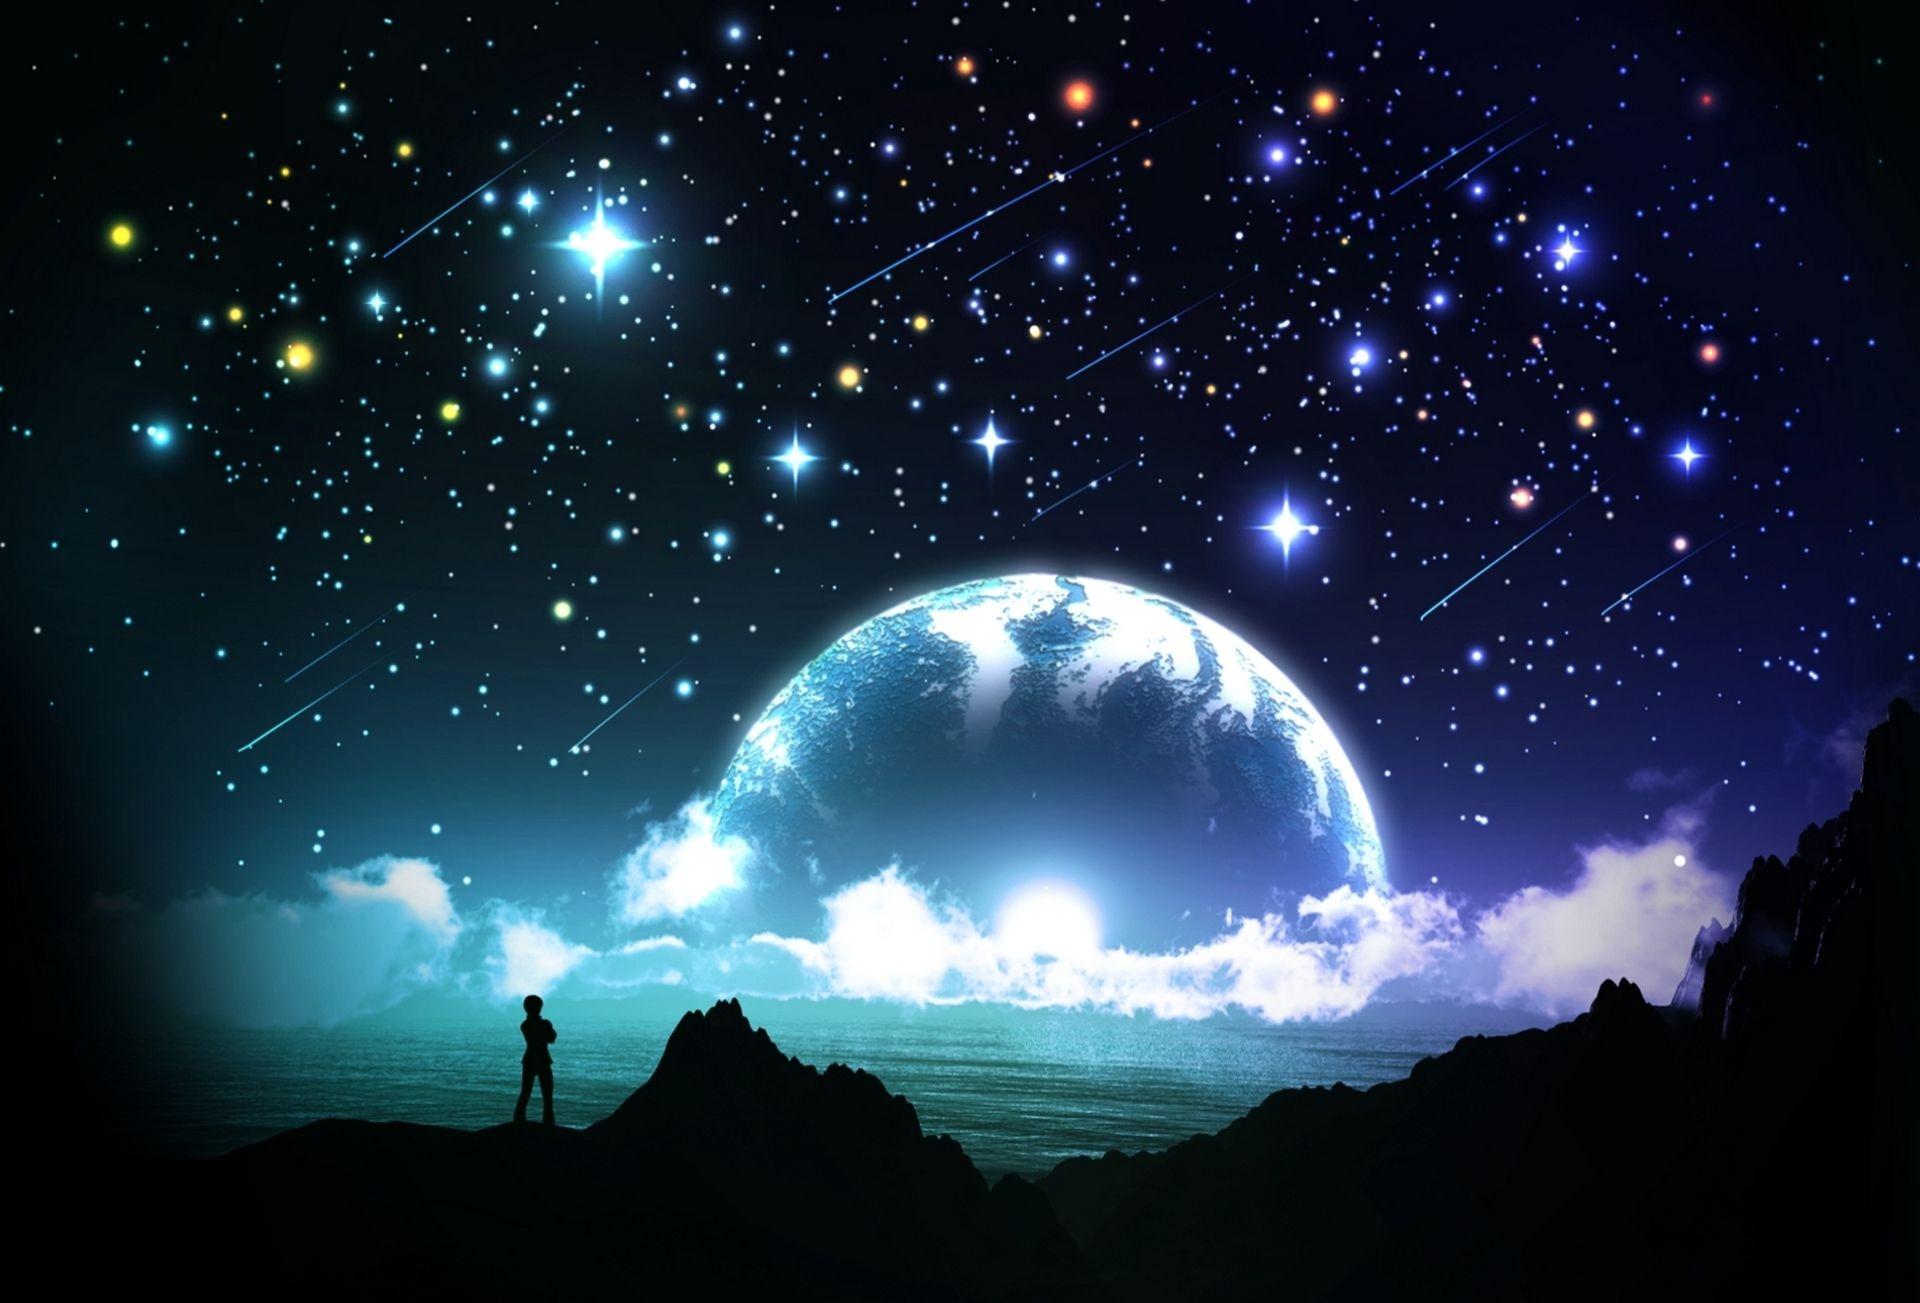 Night Sky Stars Fantasy Wallpapers